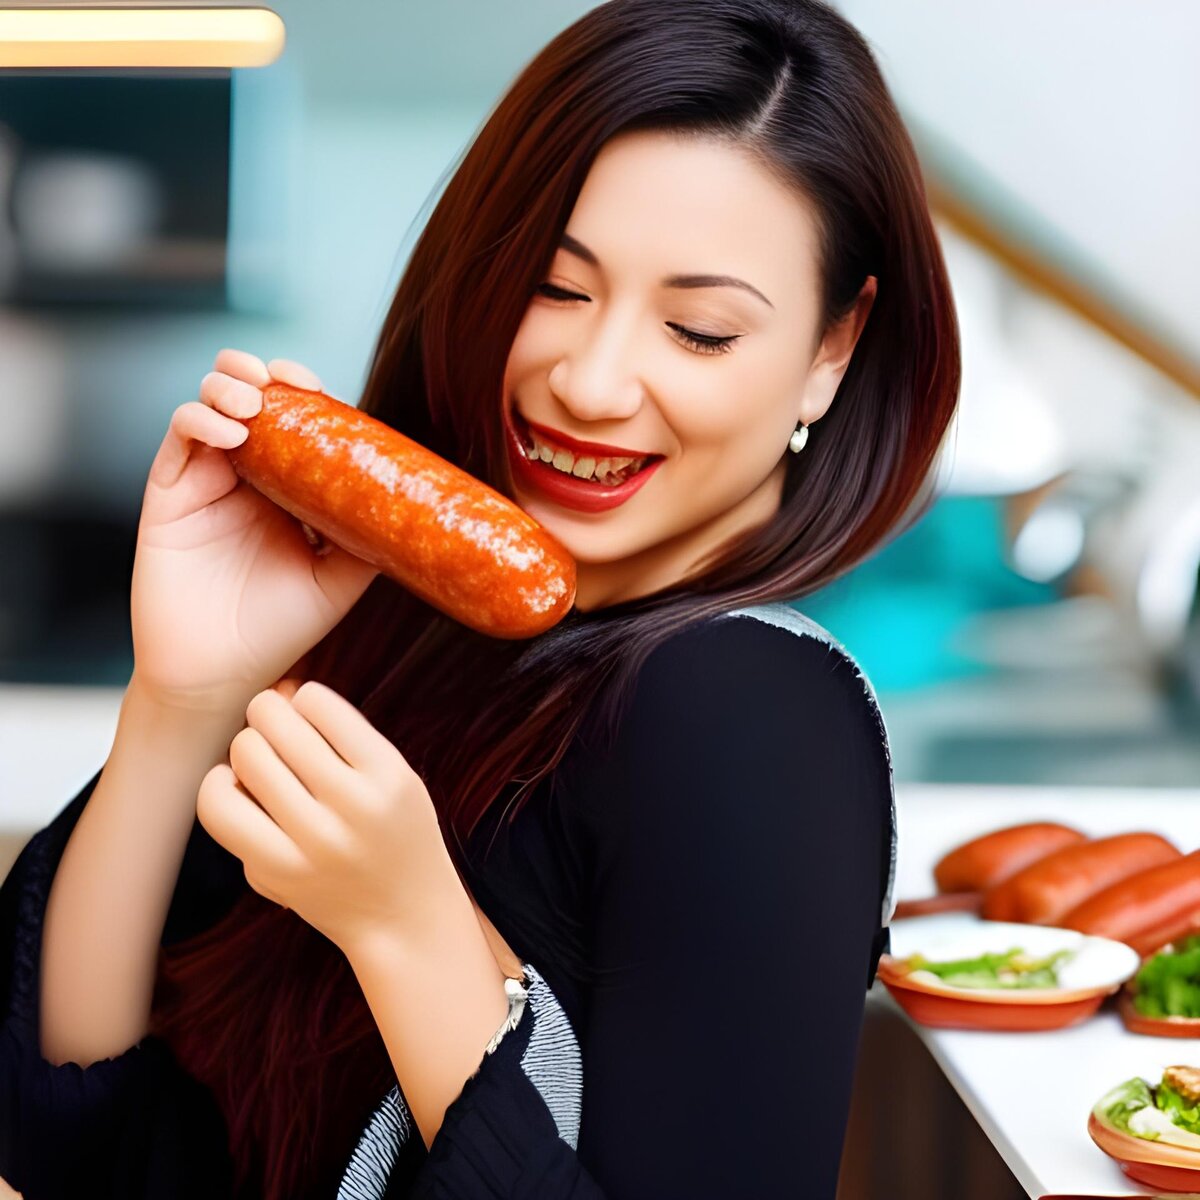 Вред колбасы и сосисок для здоровья: чем опасно обработанное мясо, риски заболеваний